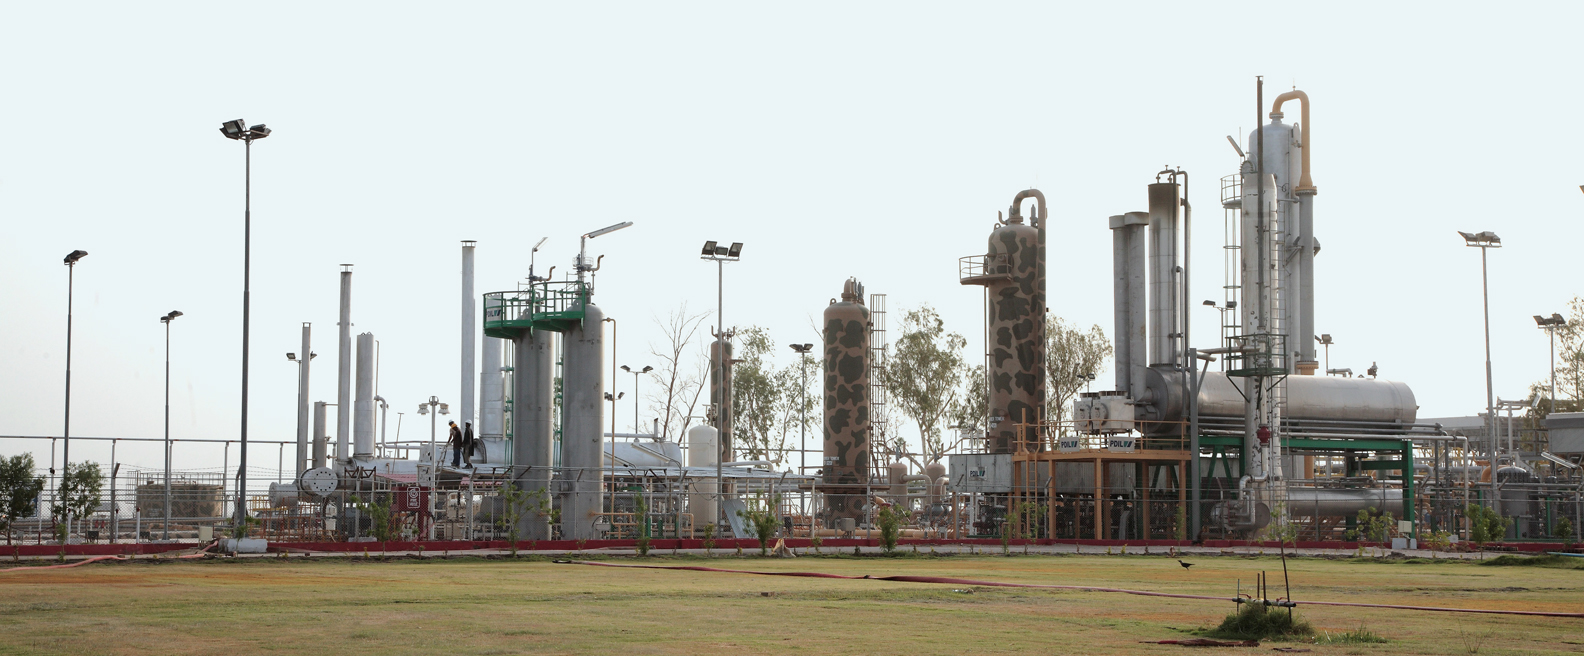 Kandhkot Gas Field, Kashmore Sindh